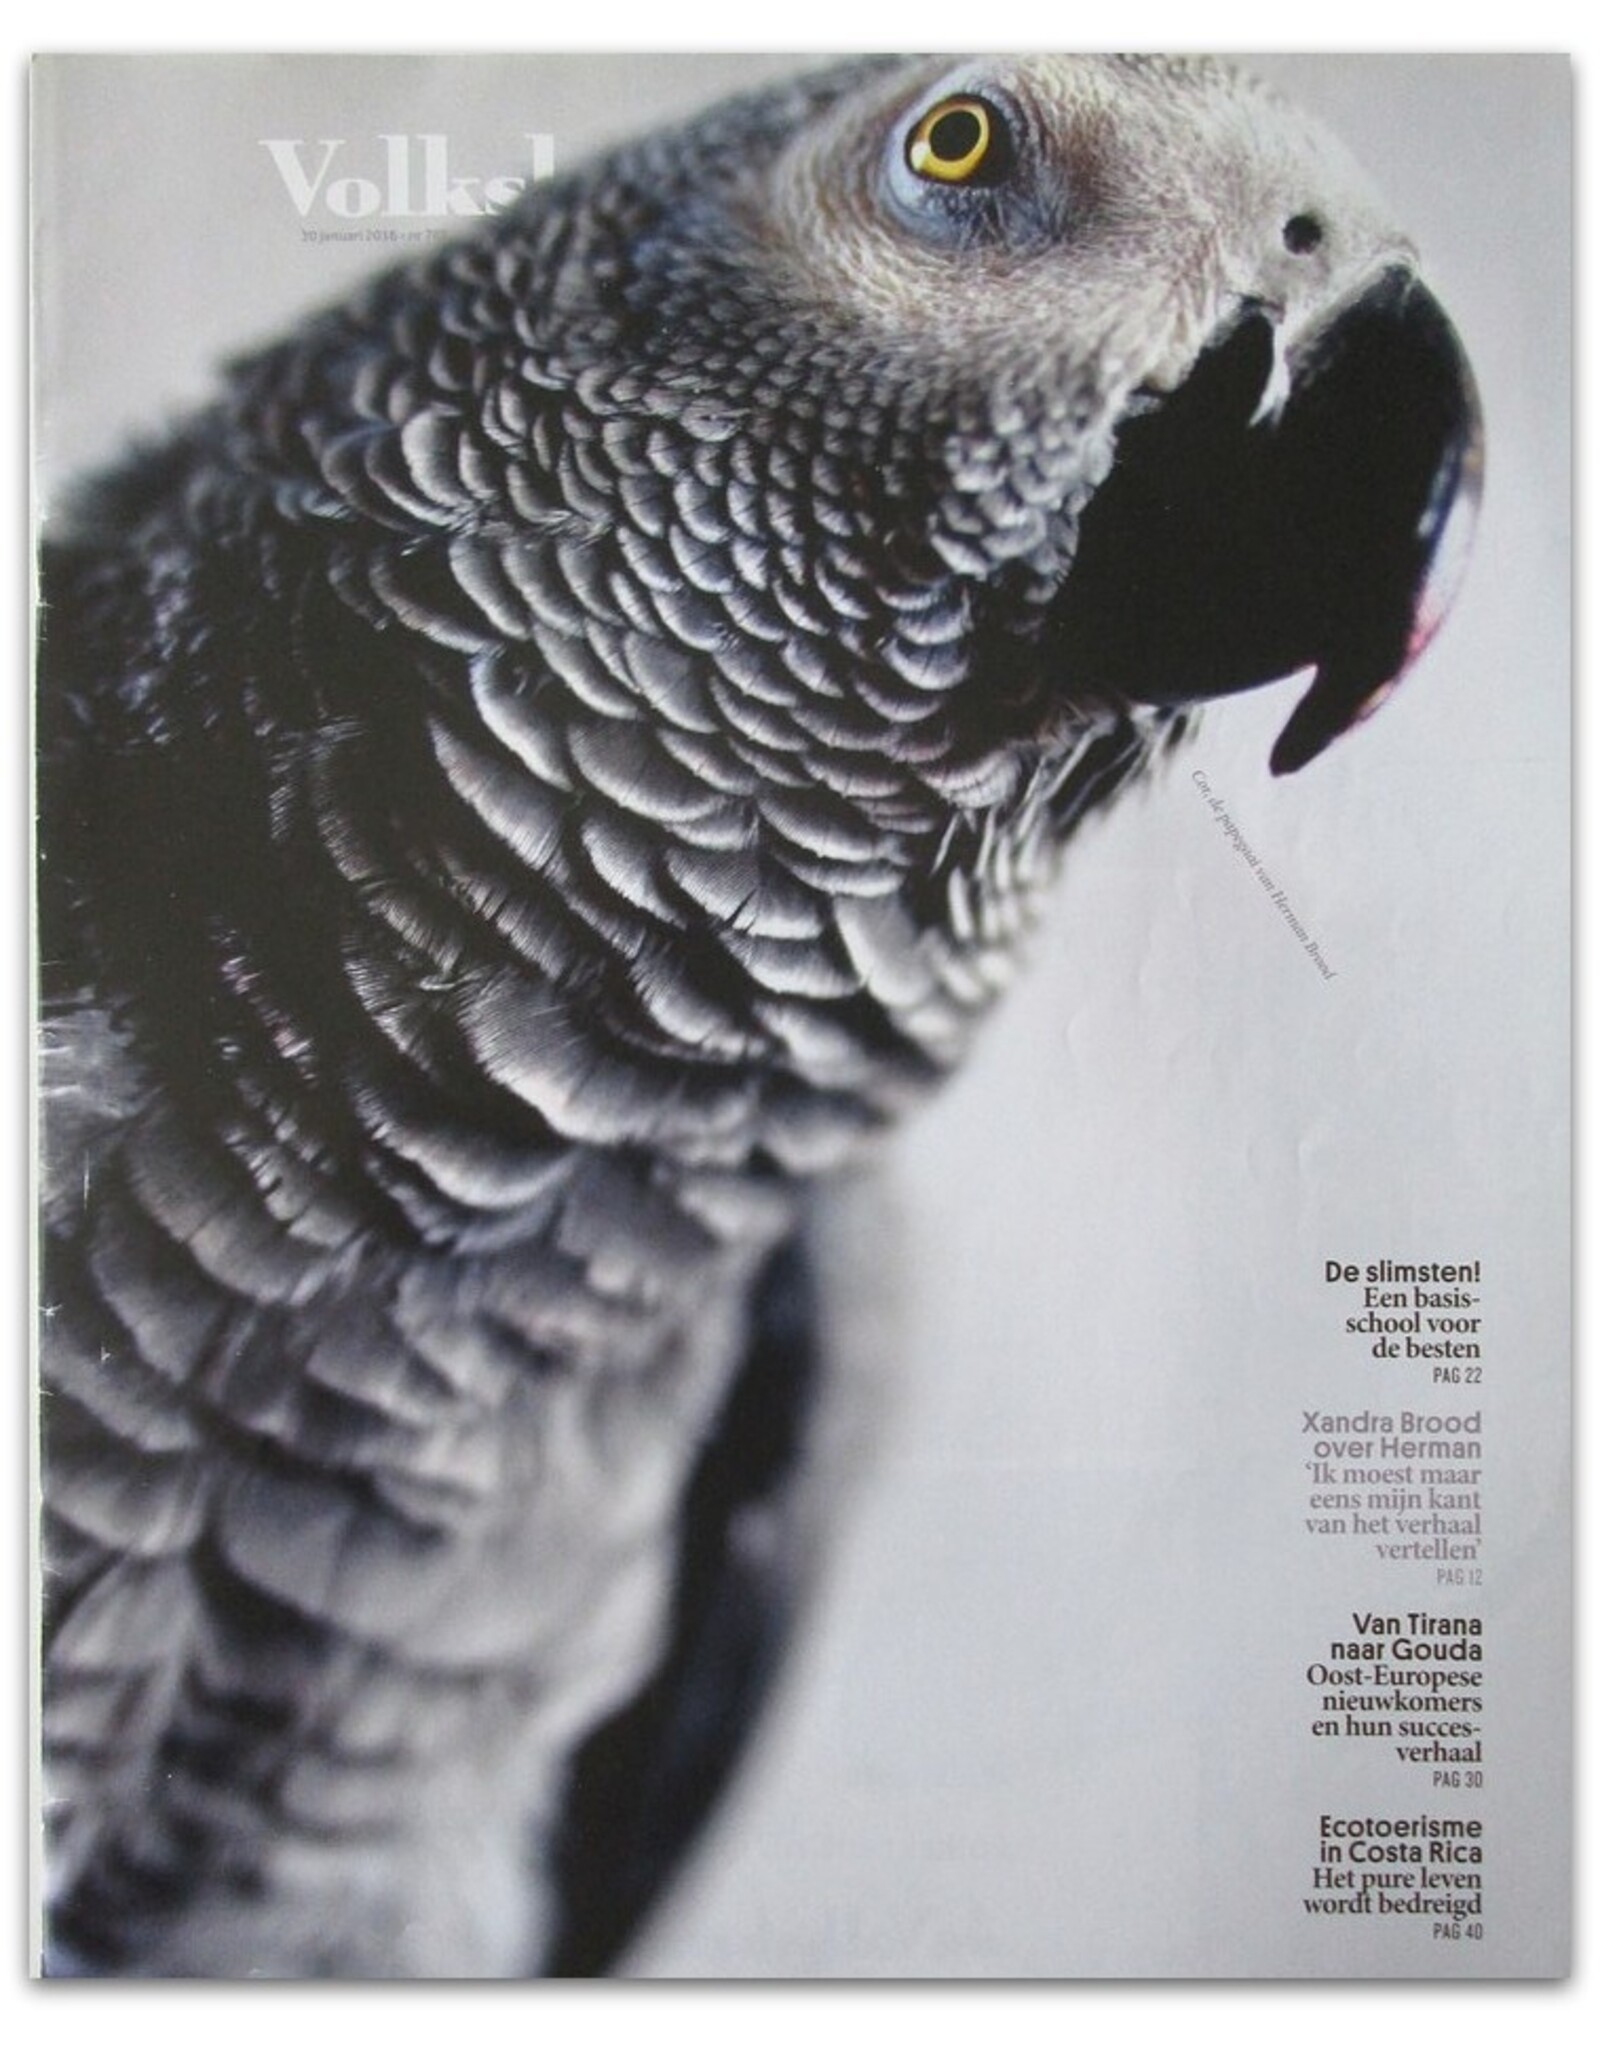 Gerard Wessel [e.a.] -Volkskrant Magazine 769: [Cor, de papegaai van Herman en Xandra Brood]